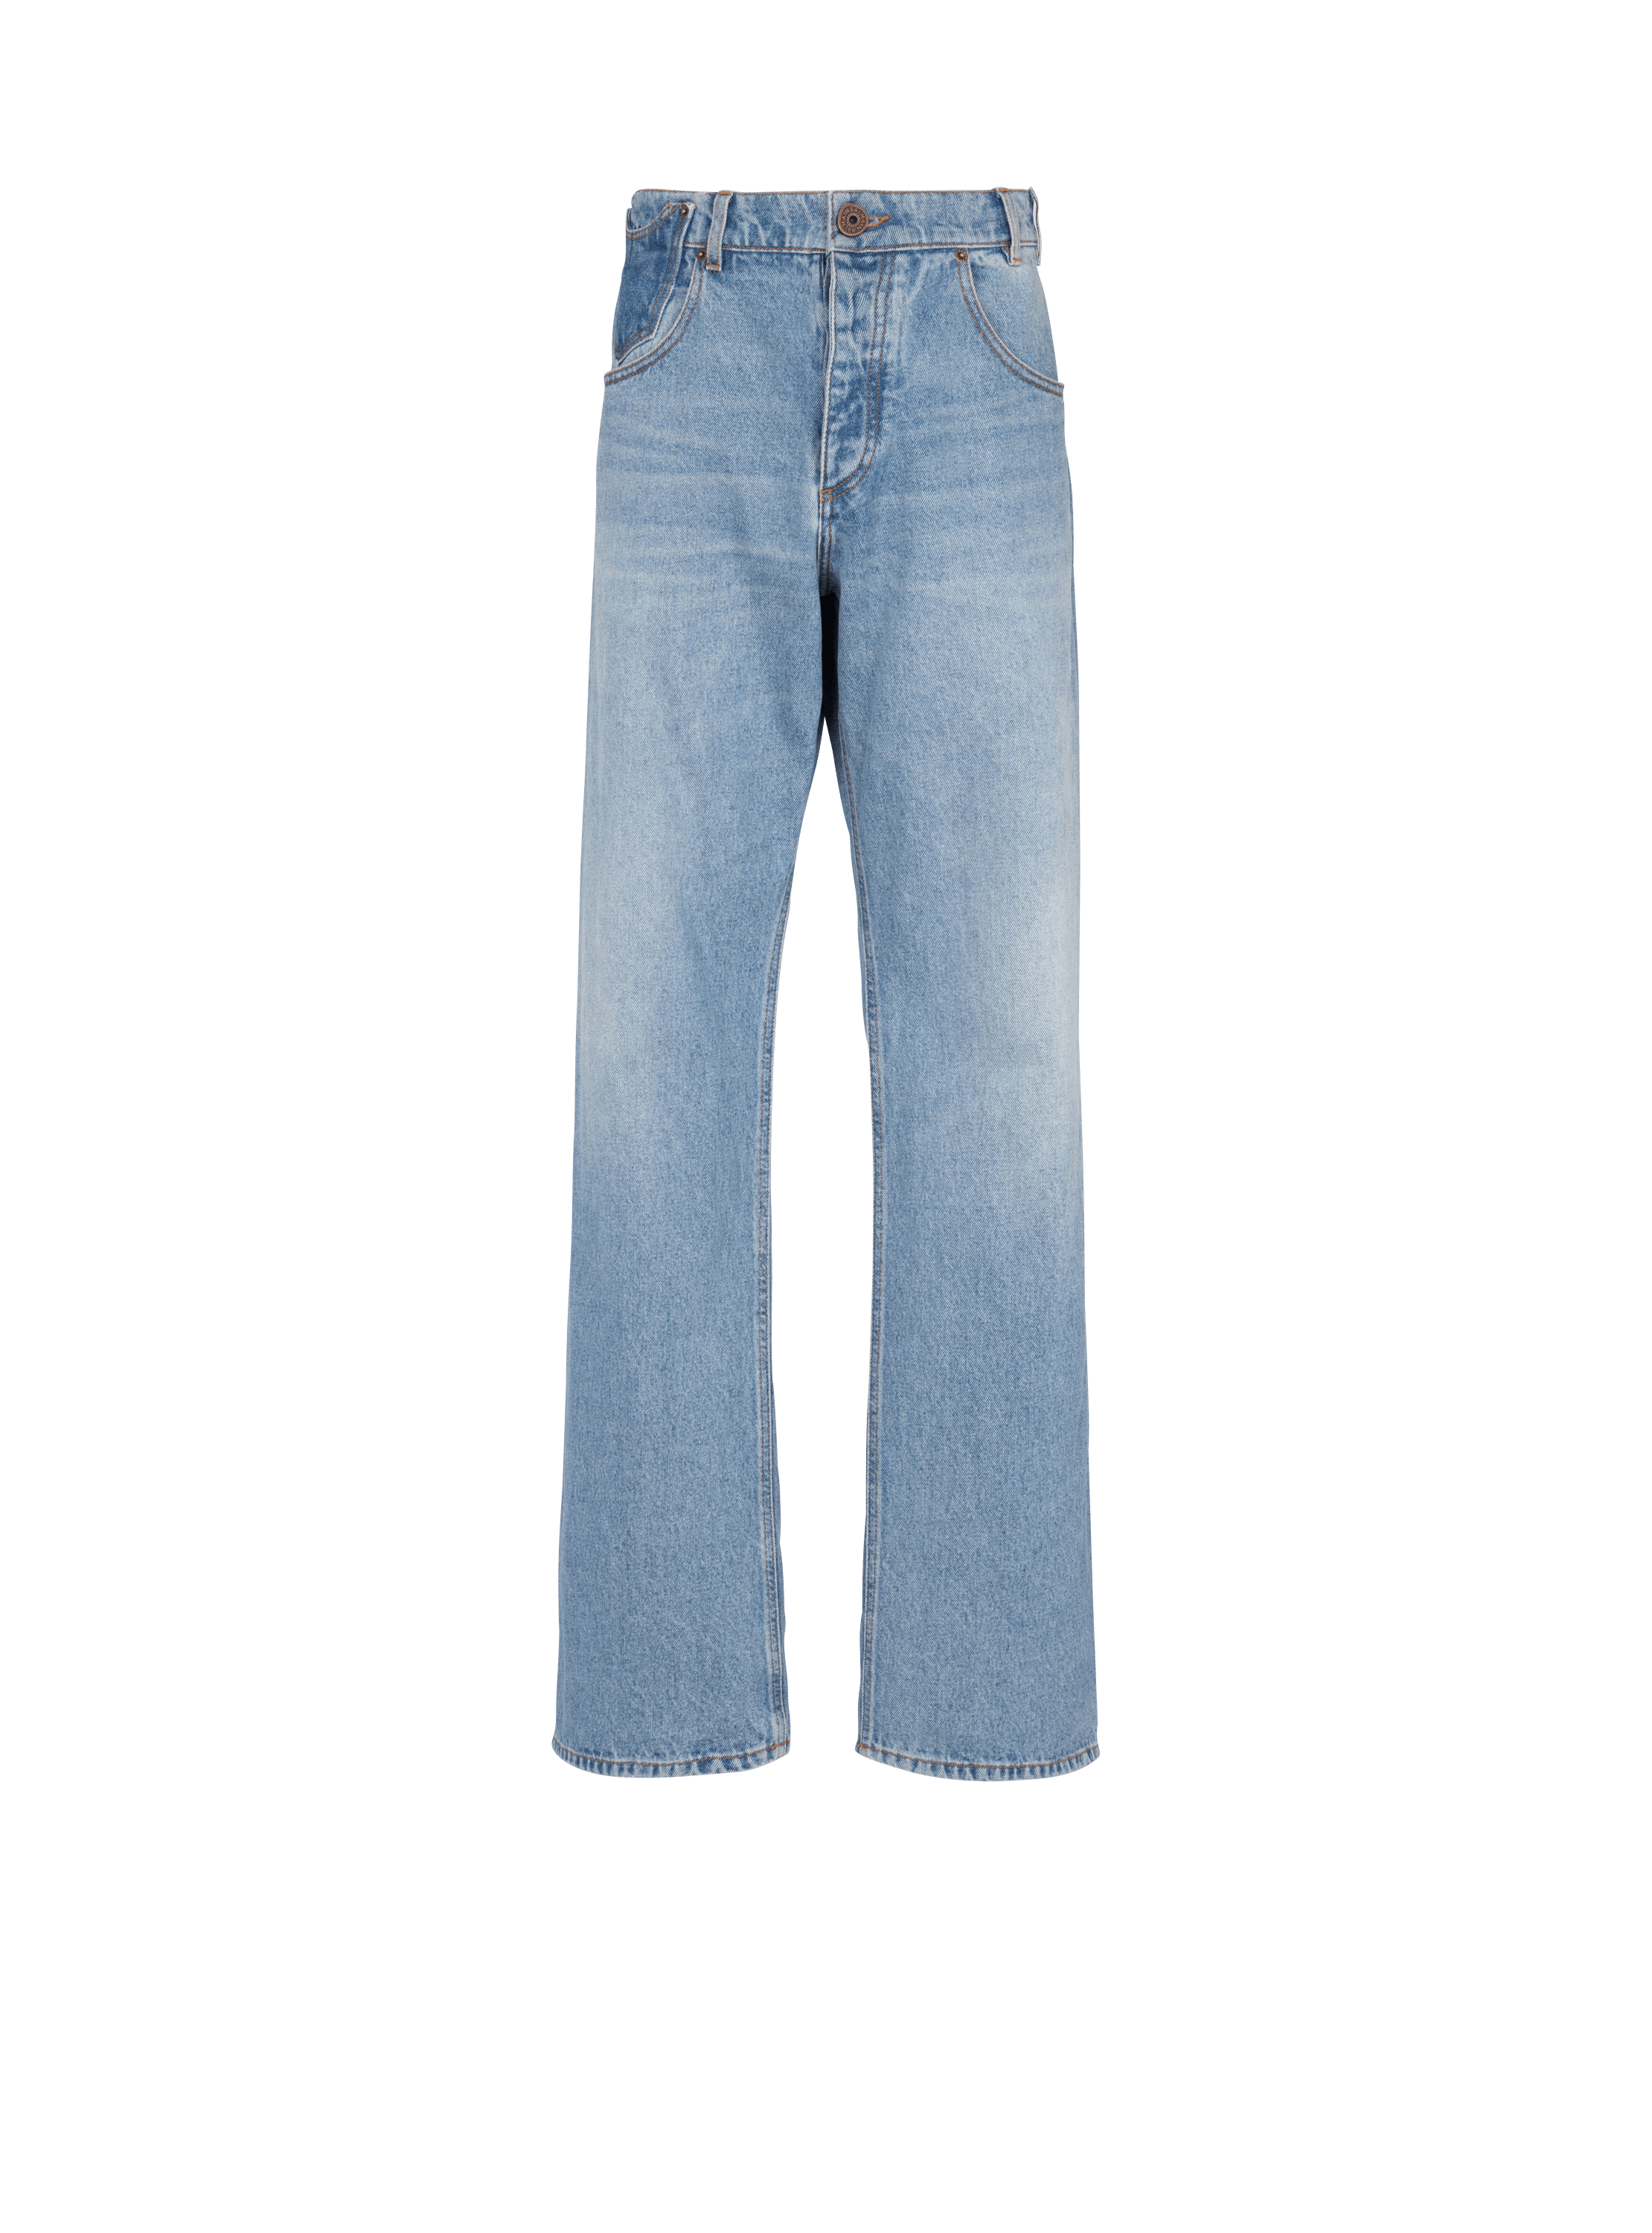 Jeans in contrast-effect denim blue - Men | BALMAIN